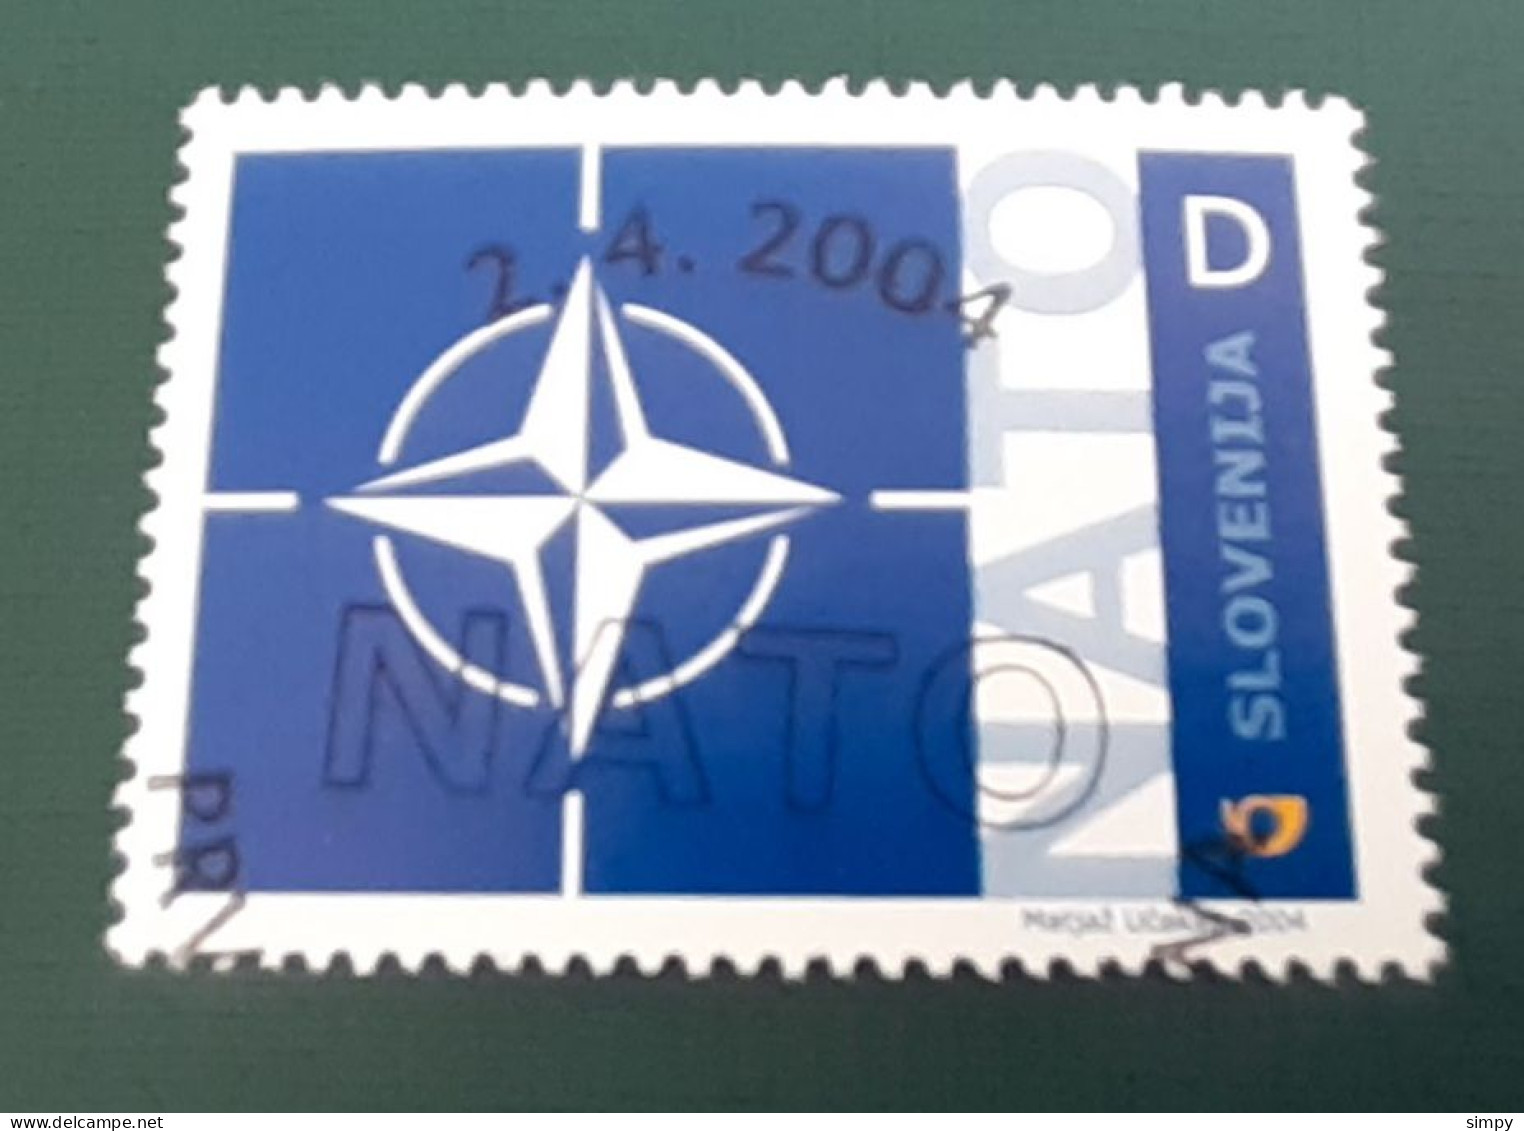 SLOVENIA 2004 Accession Of Slovenia To The NATO Michel 468 Used Stamp - Slovenia